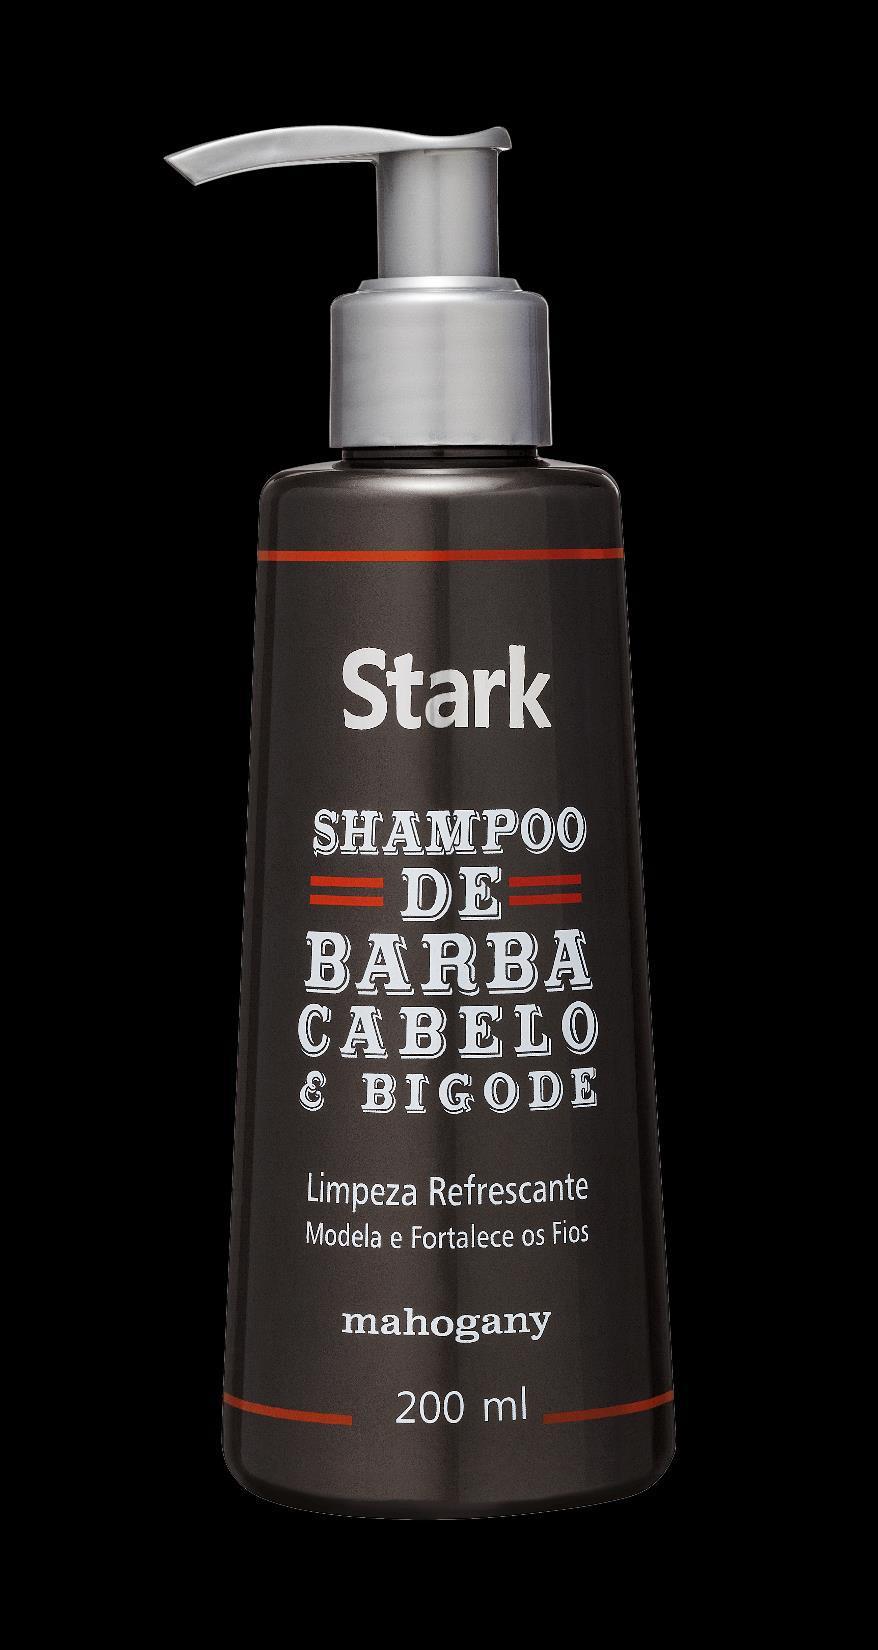 Shampoo de Barba, Cabelo e Bigode Linha Stark Uma nova tendência para o público masculino.